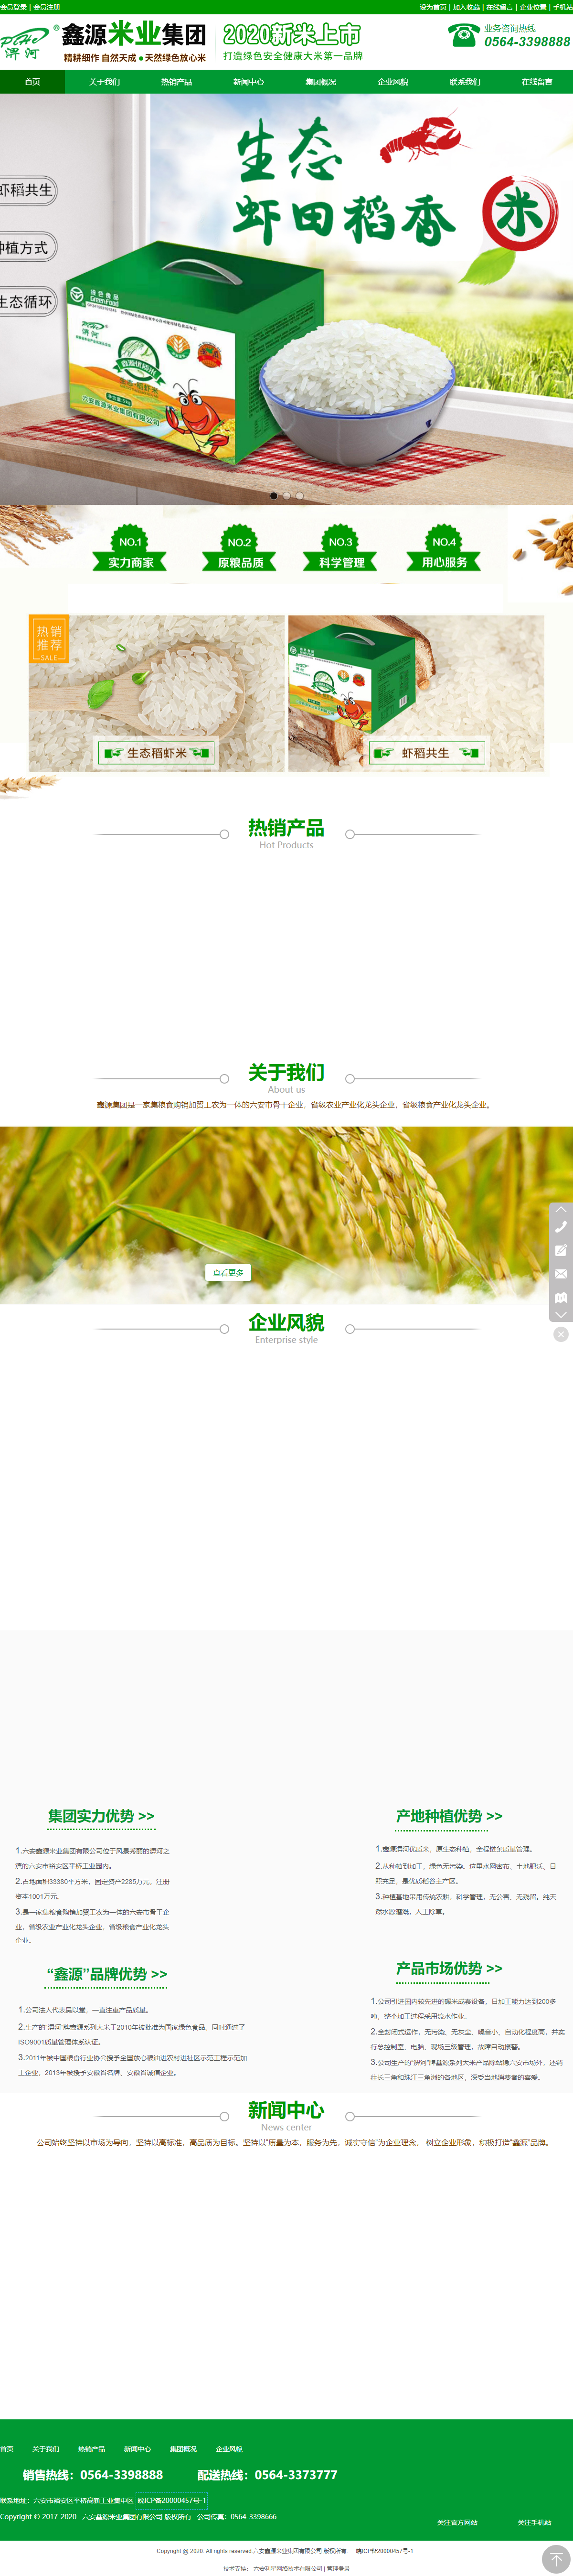 六安鑫源米业集团有限公司网站案例